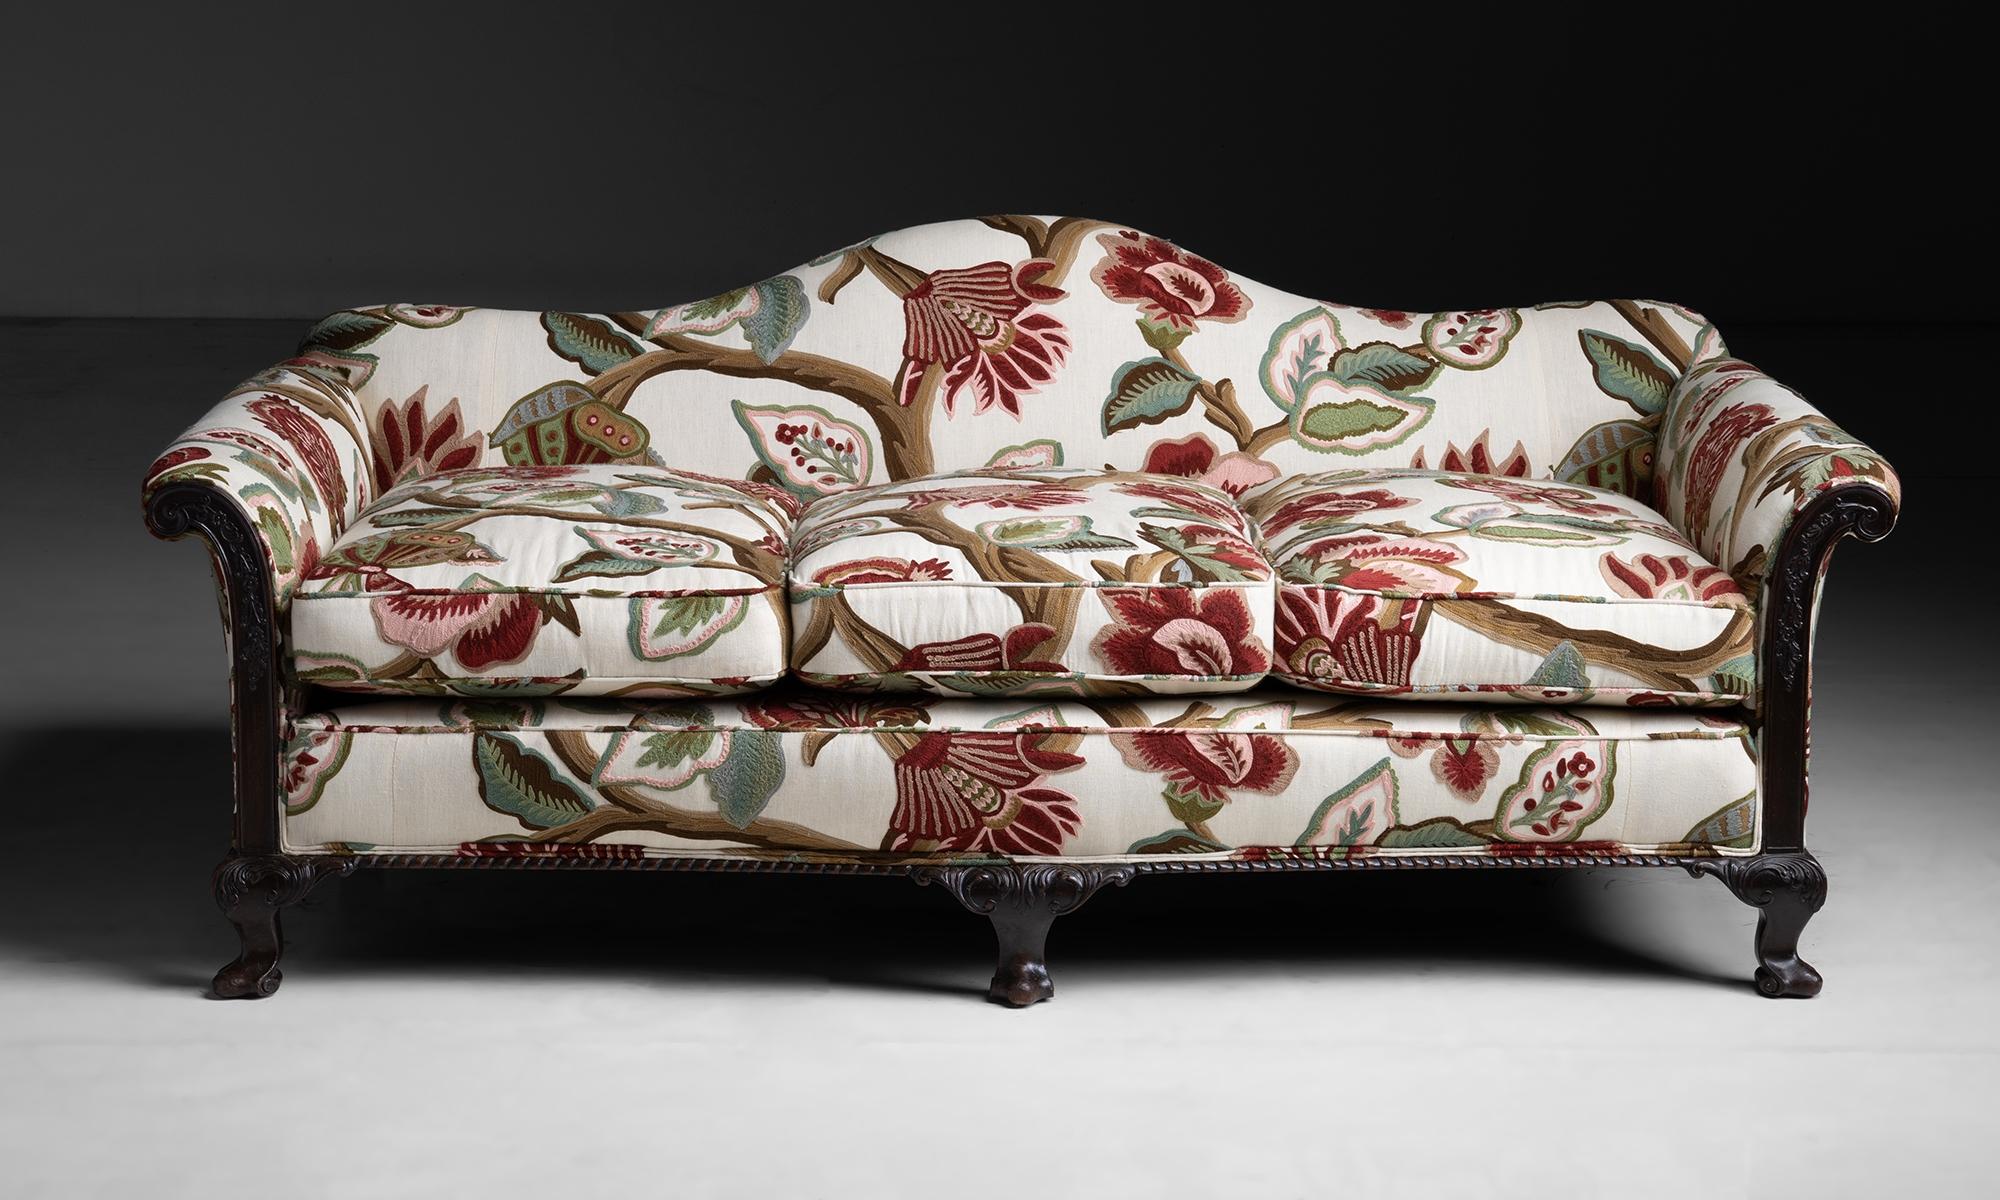 Canapé en lin brodé par Pierre Frey

Angleterre, vers 1900

Canapé bas à dos de chameau avec cadre en bois sculpté. Nouvellement tapissé d'un lin brodé de fleurs.

73.5 